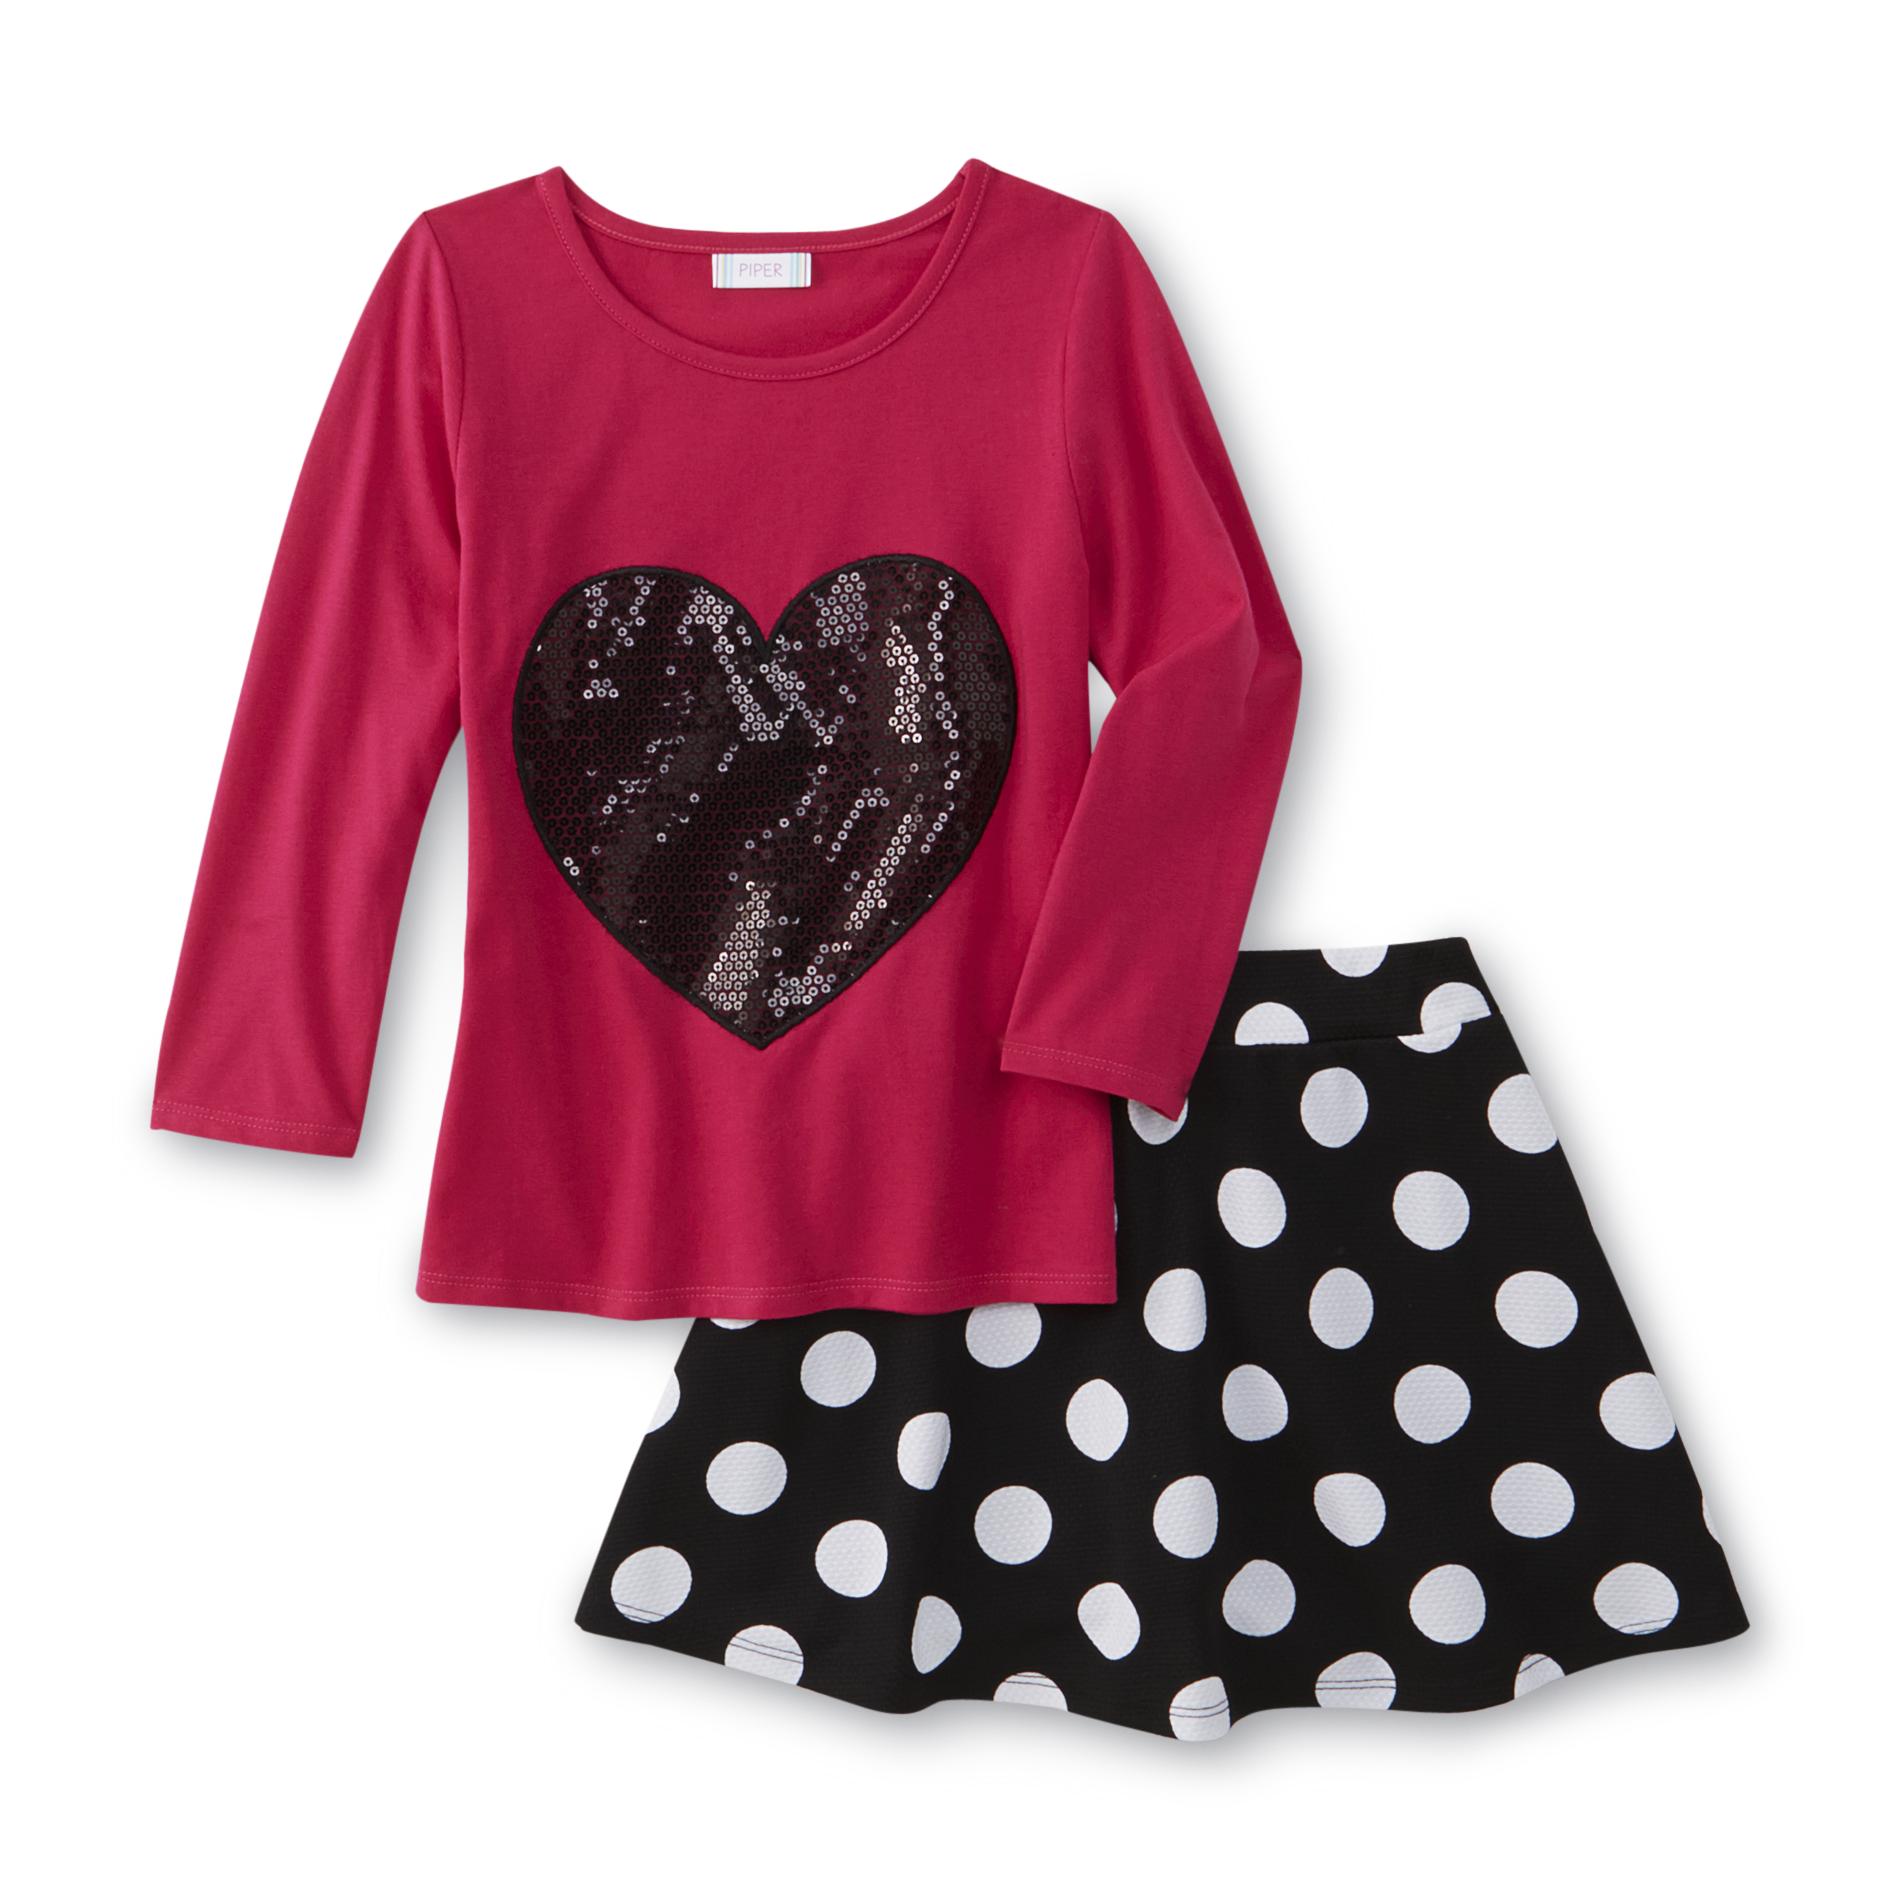 Girl's Graphic T-Shirt & Skirt - Heart & Polka Dot